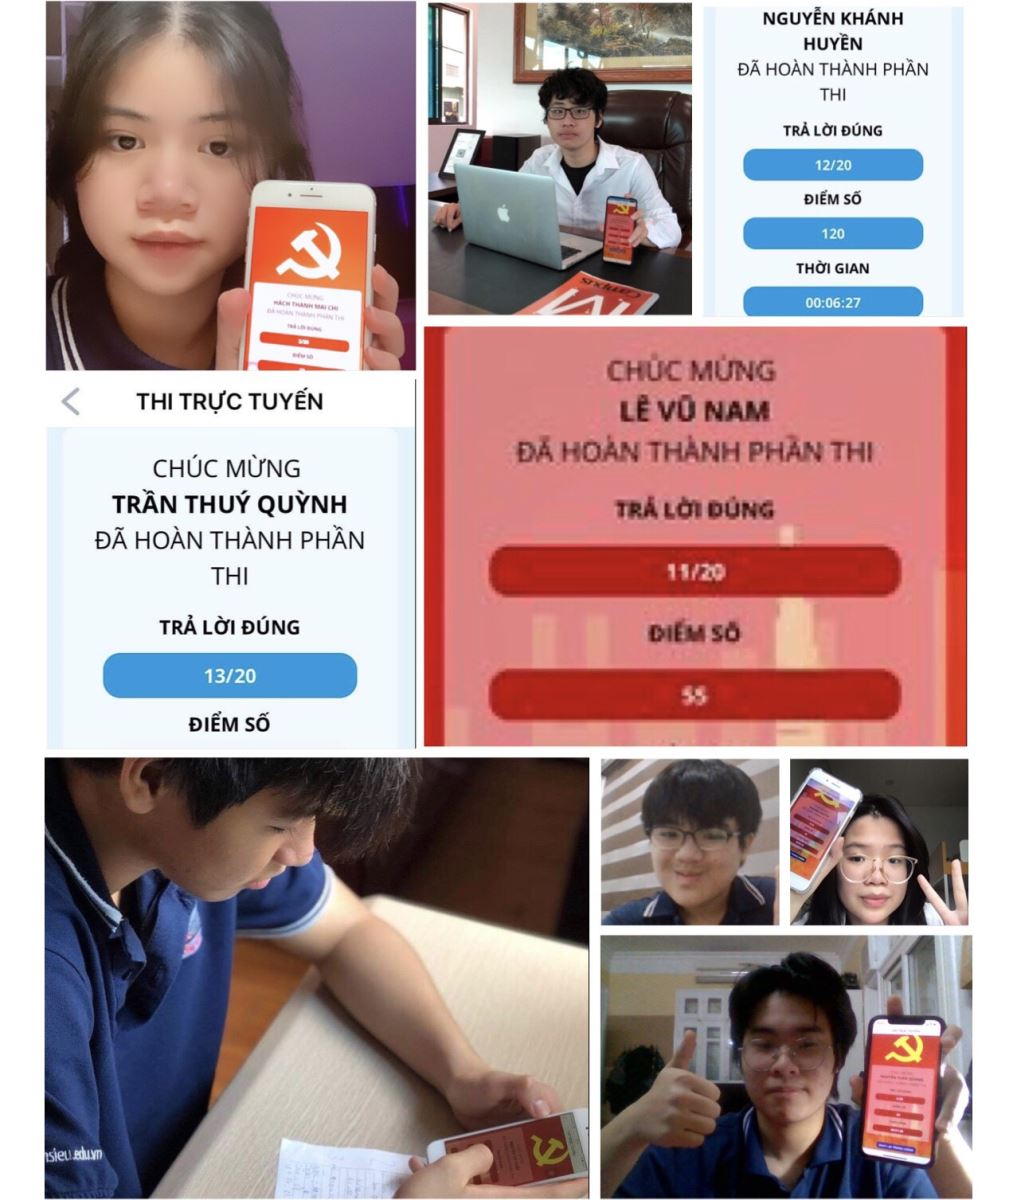 Tuổi trẻ Nguyễn Siêu tích cực hưởng ứng hai cuộc thi trực tuyến